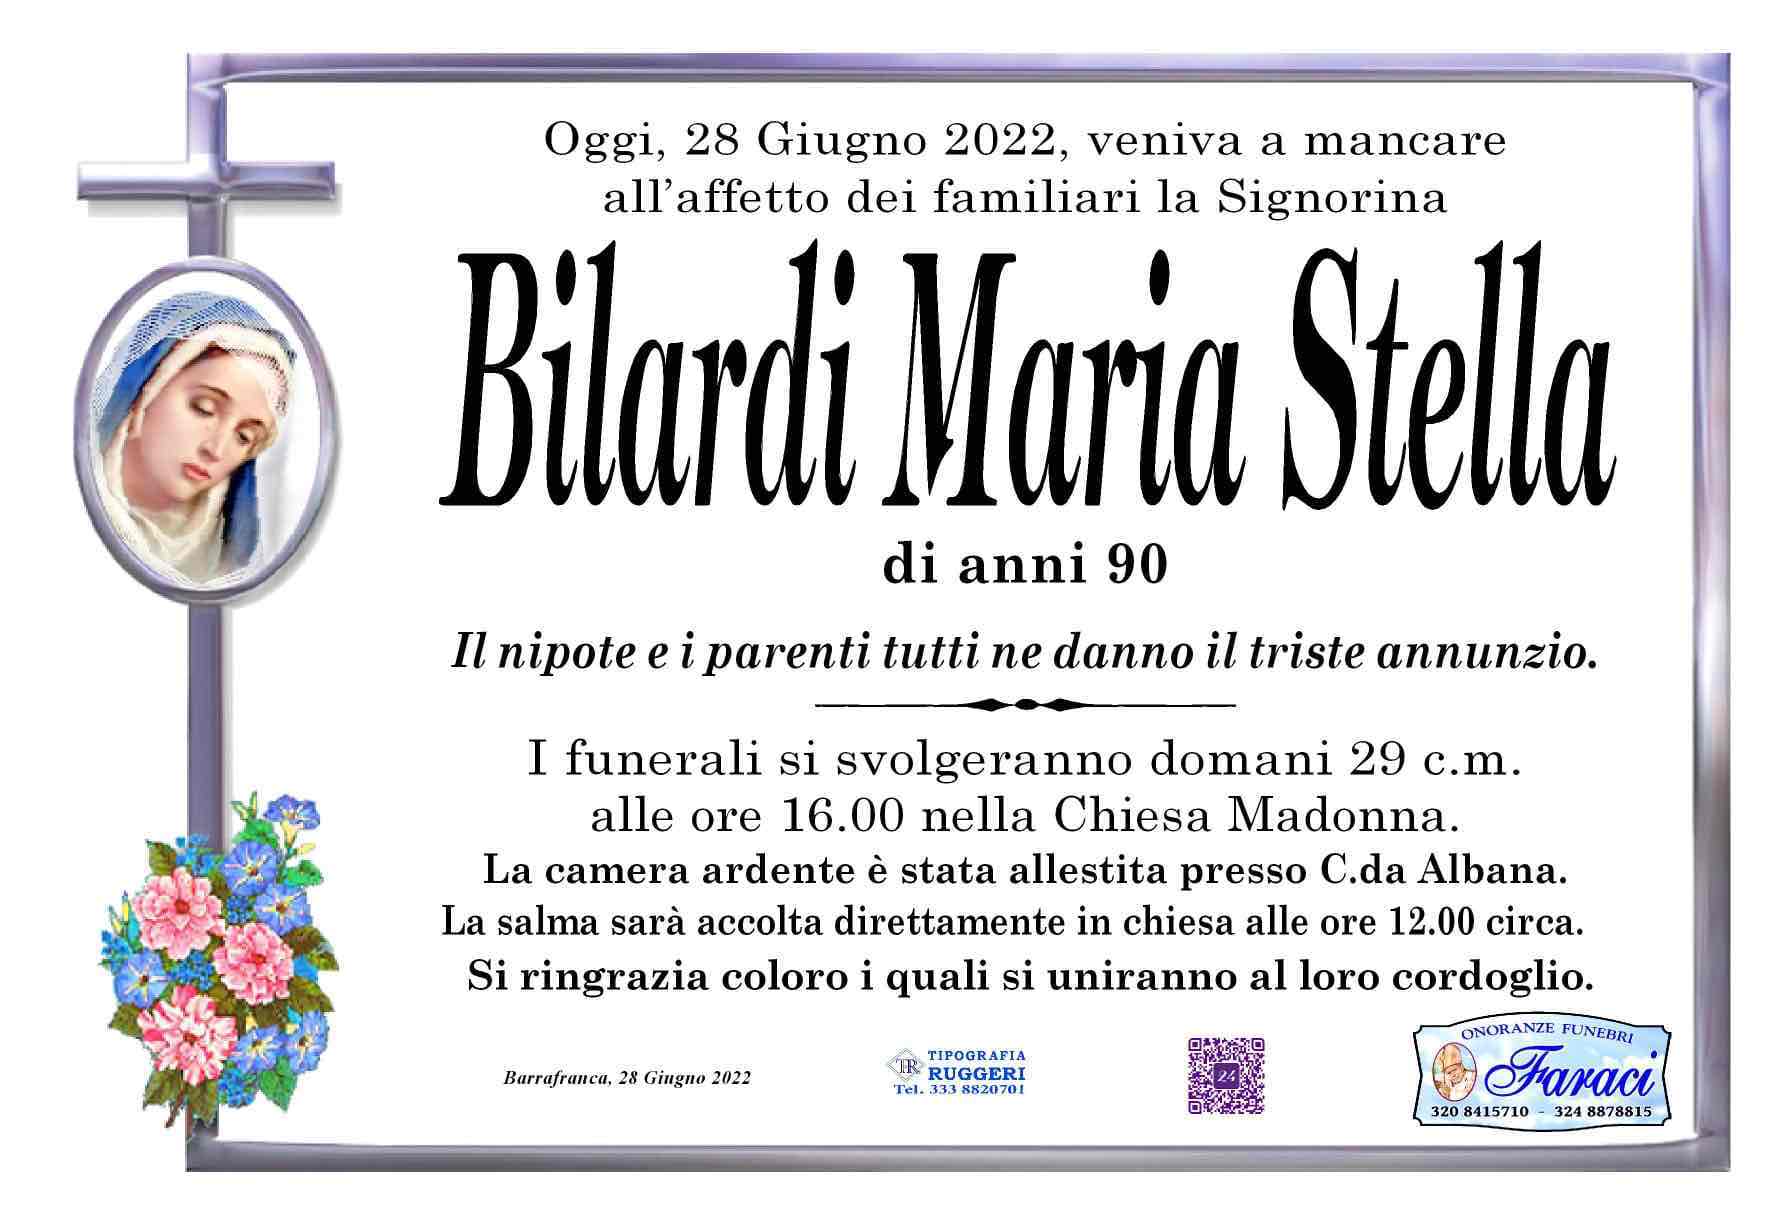 Maria Stella Bilardi